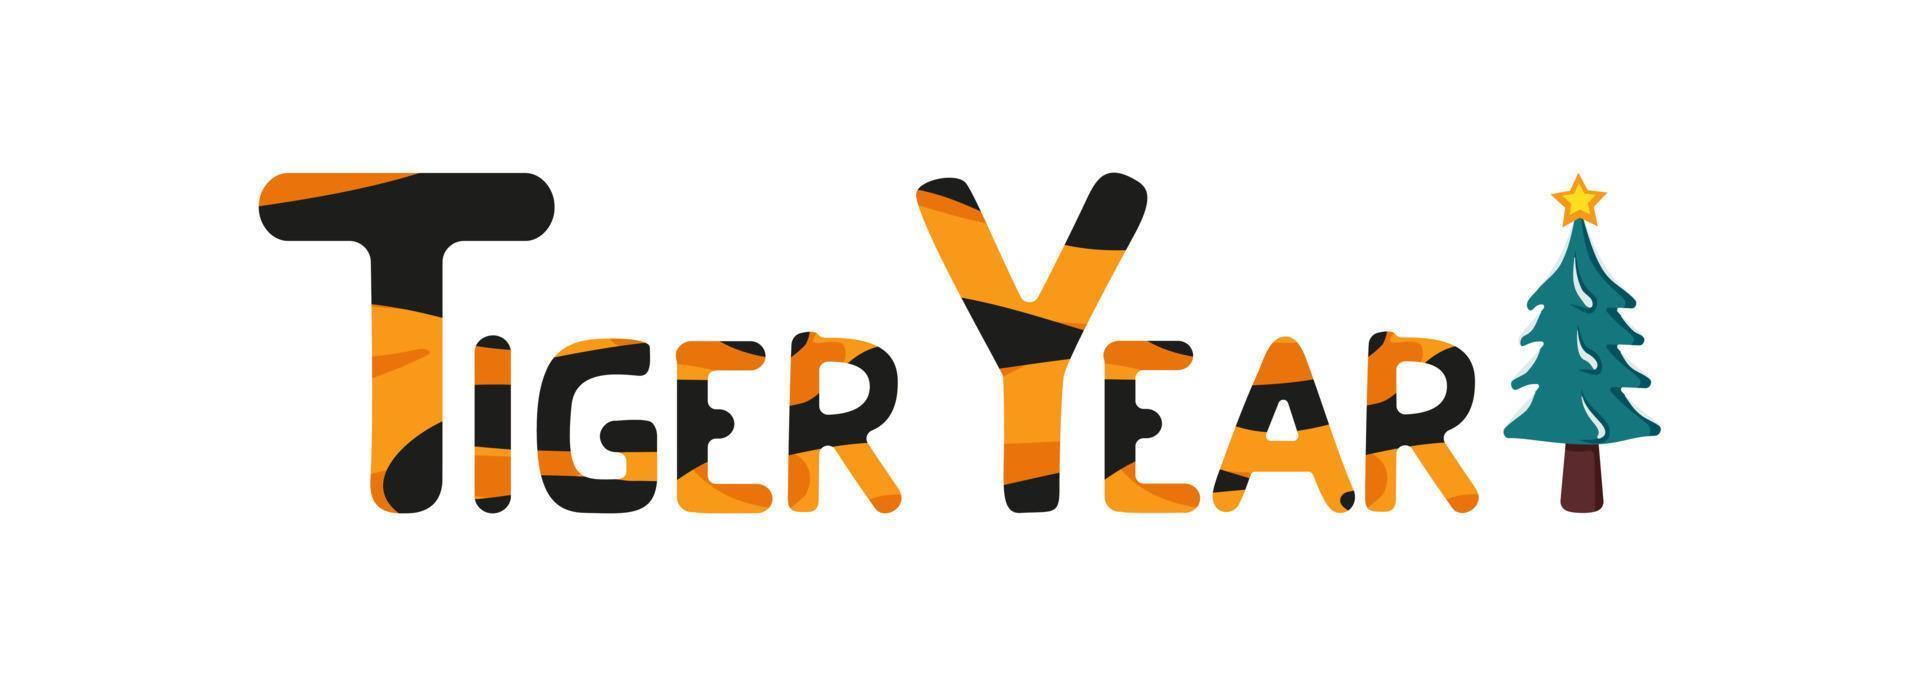 a inscrição ano novo do tigre de laranja listrado com letras pretas e uma árvore de Natal verde para banner, design vetor